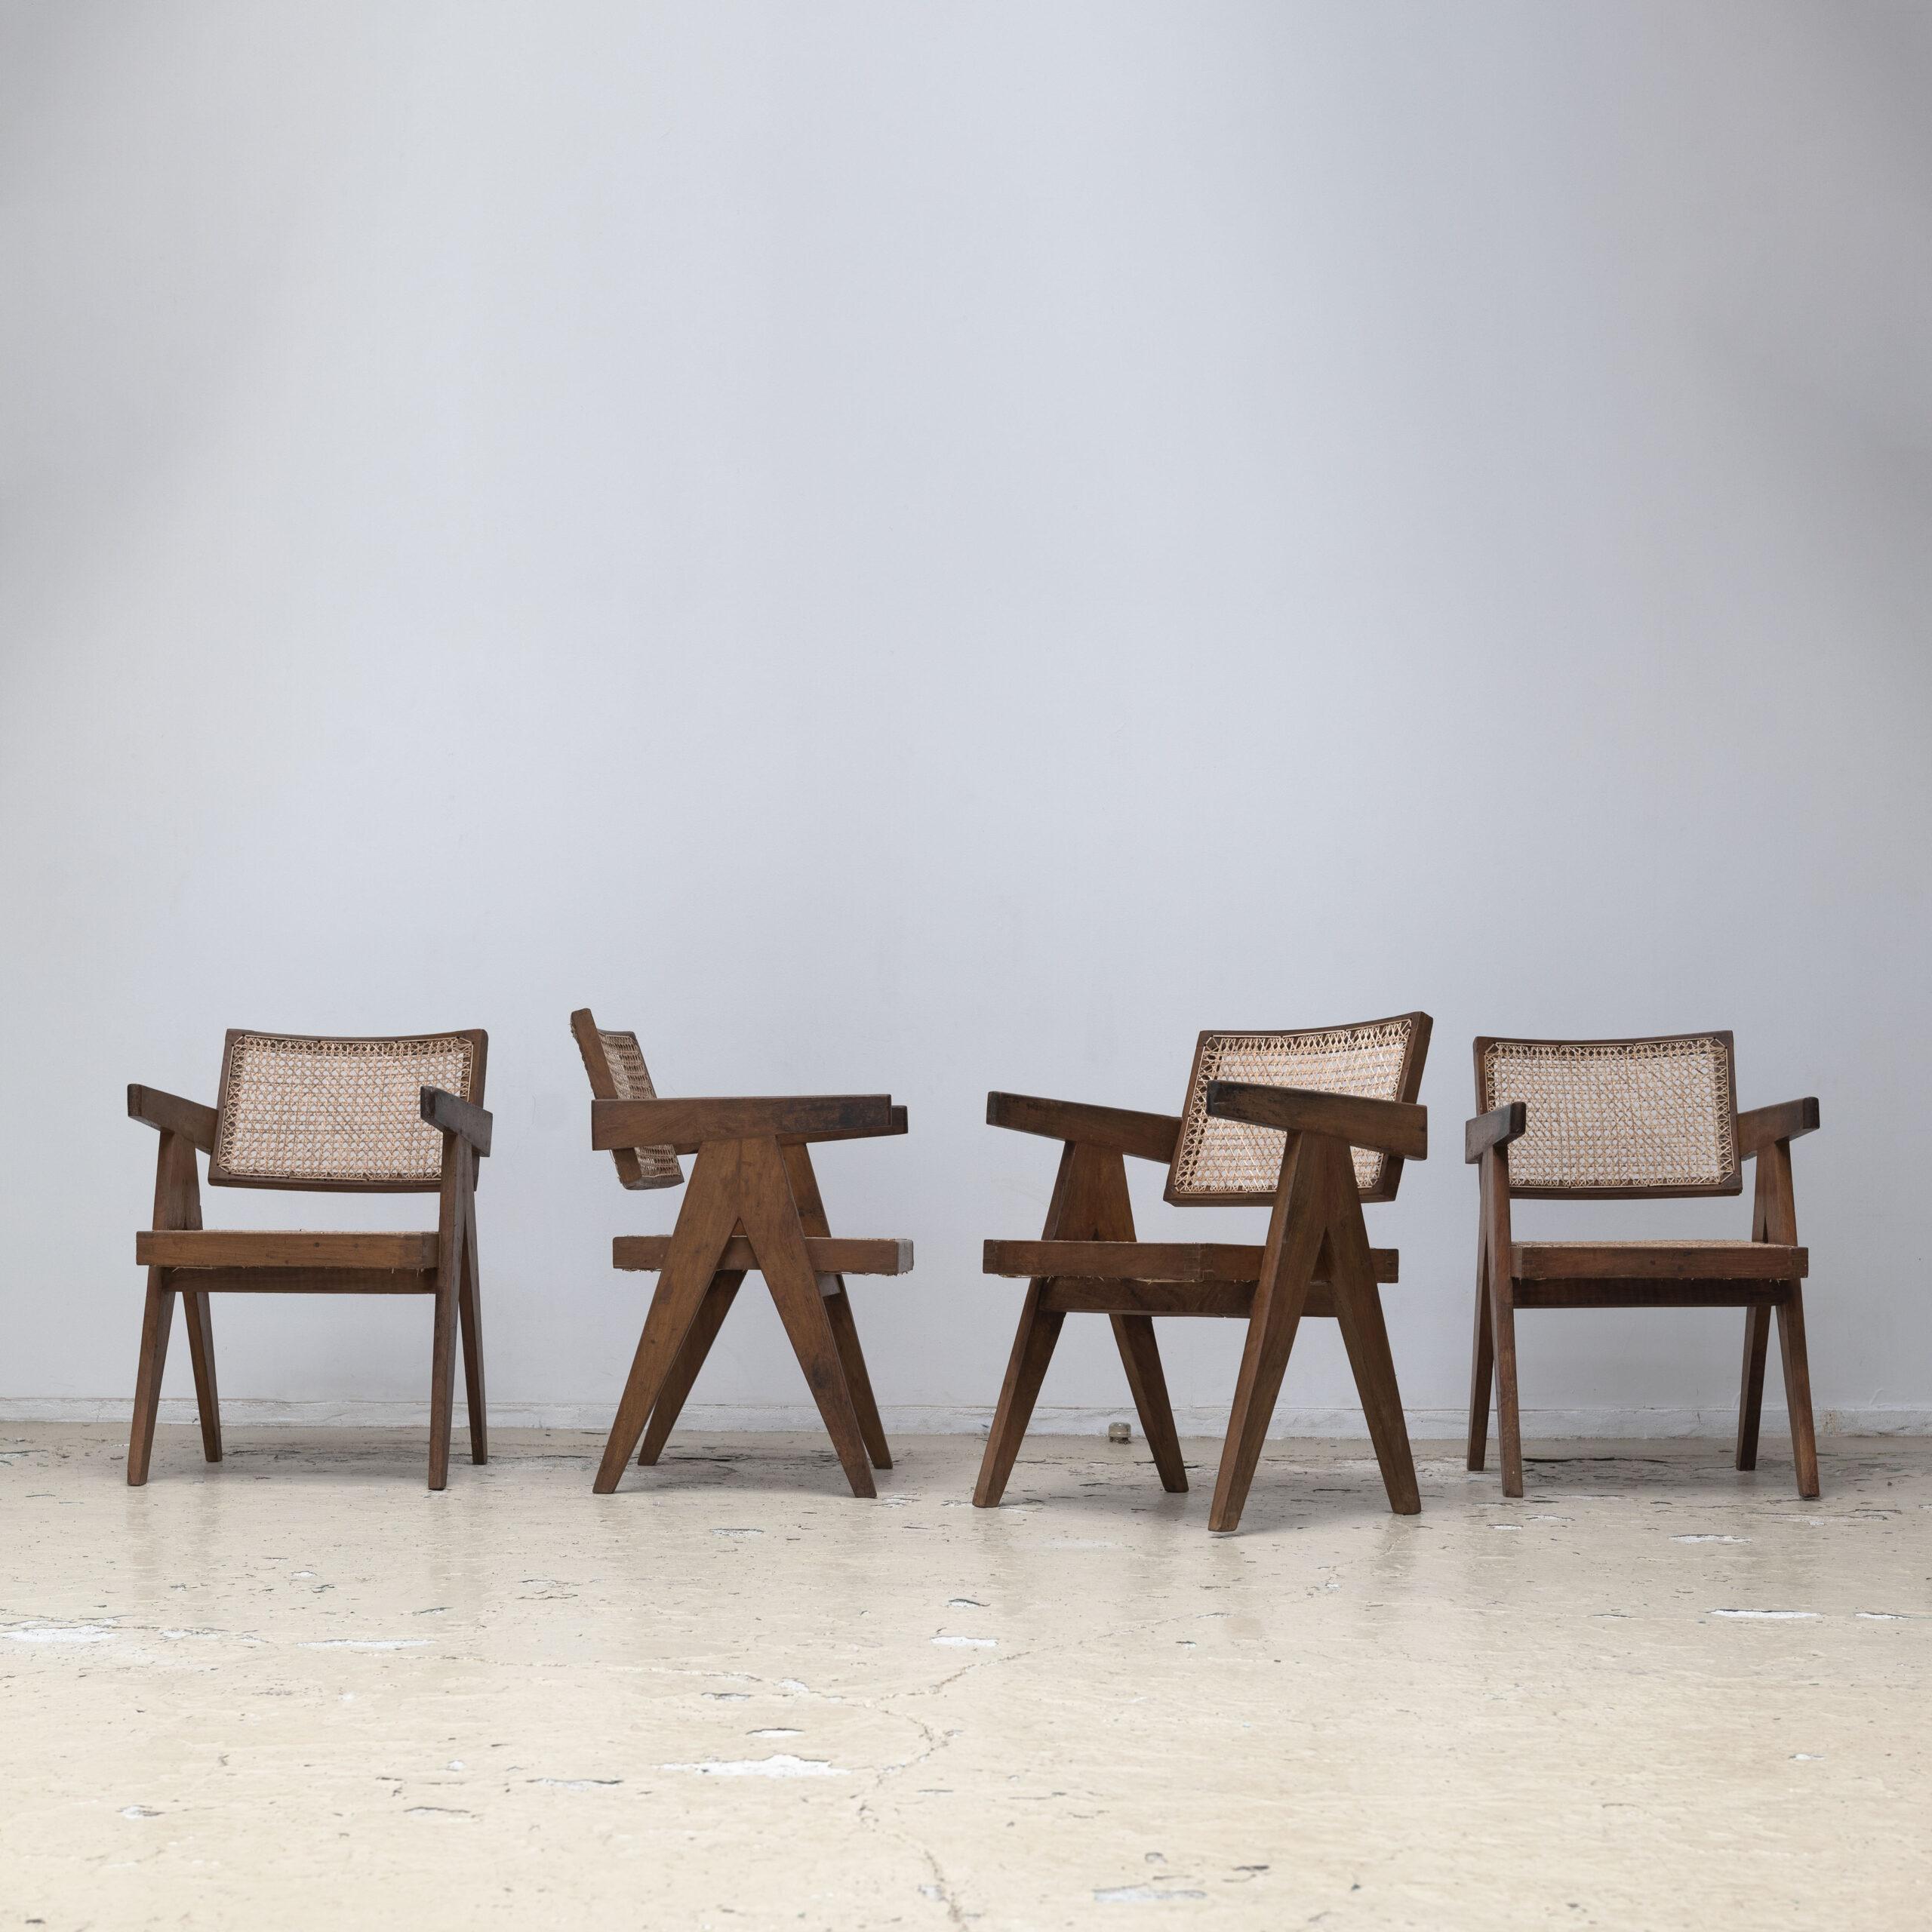 PIERRE JEANNERET – Office Chair - Objet d' art